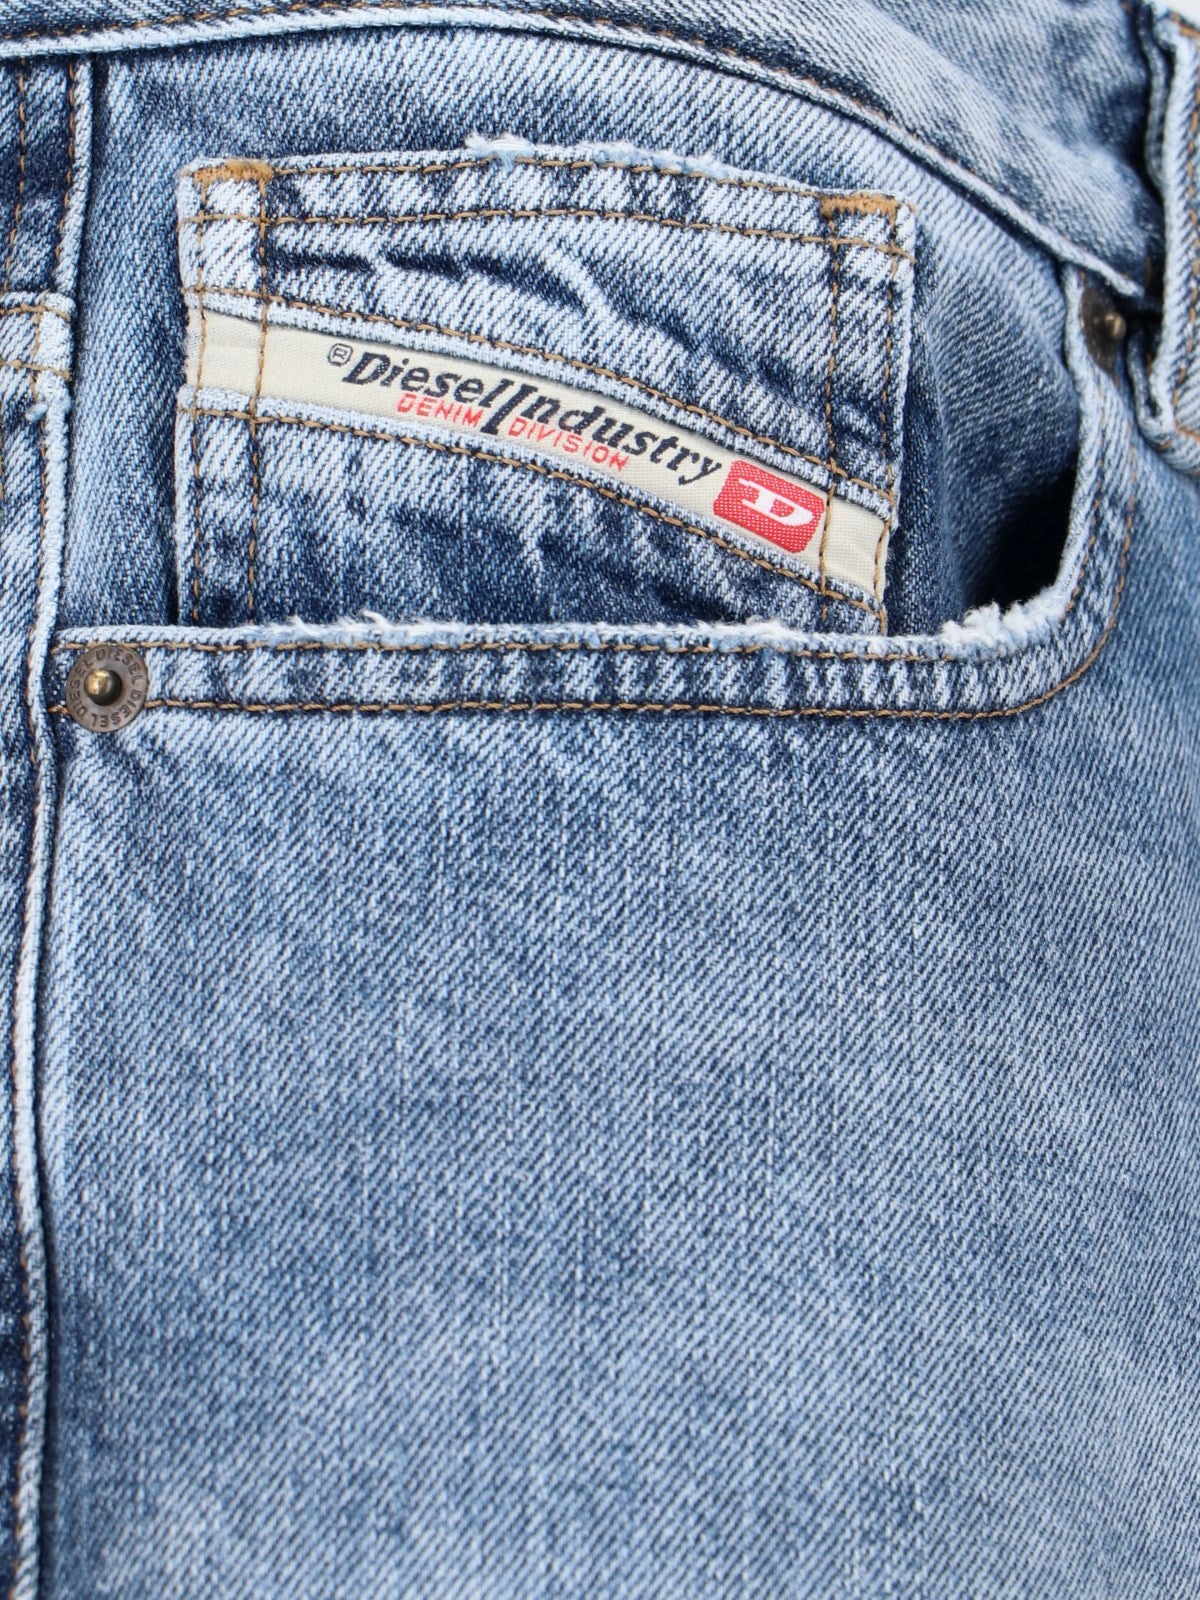 Diesel Jeans palazzo-Pantaloni flare-Diesel-Jeans palazzo Diesel, in denim blu, passanti cintura, chiusura bottoni, design cinque tasche, dettaglio patch logo applicata retro, gamba ampia.-Dresso